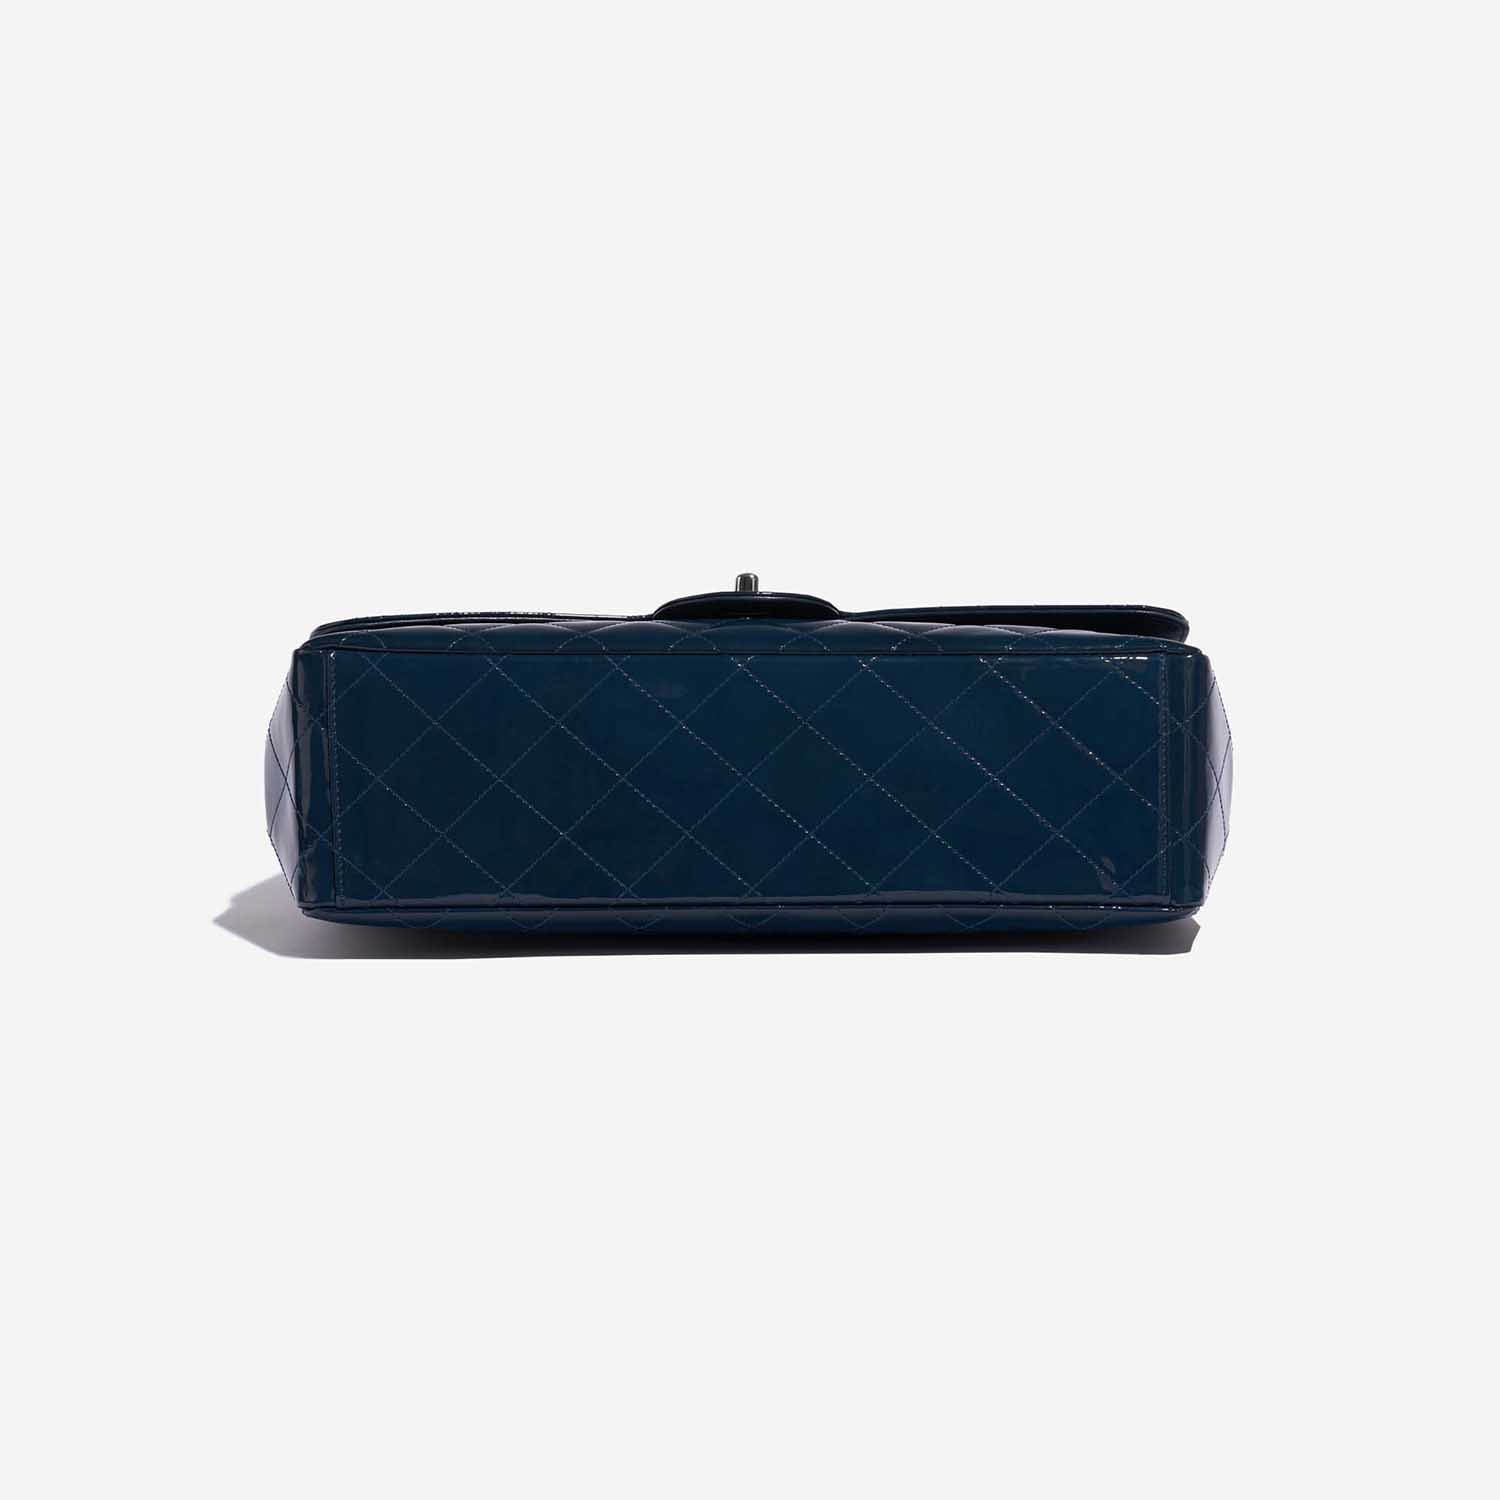 Sac Chanel d'occasion Classique Maxi Patent Leather Marine Blue Bottom | Vendez votre sac de créateur sur Saclab.com